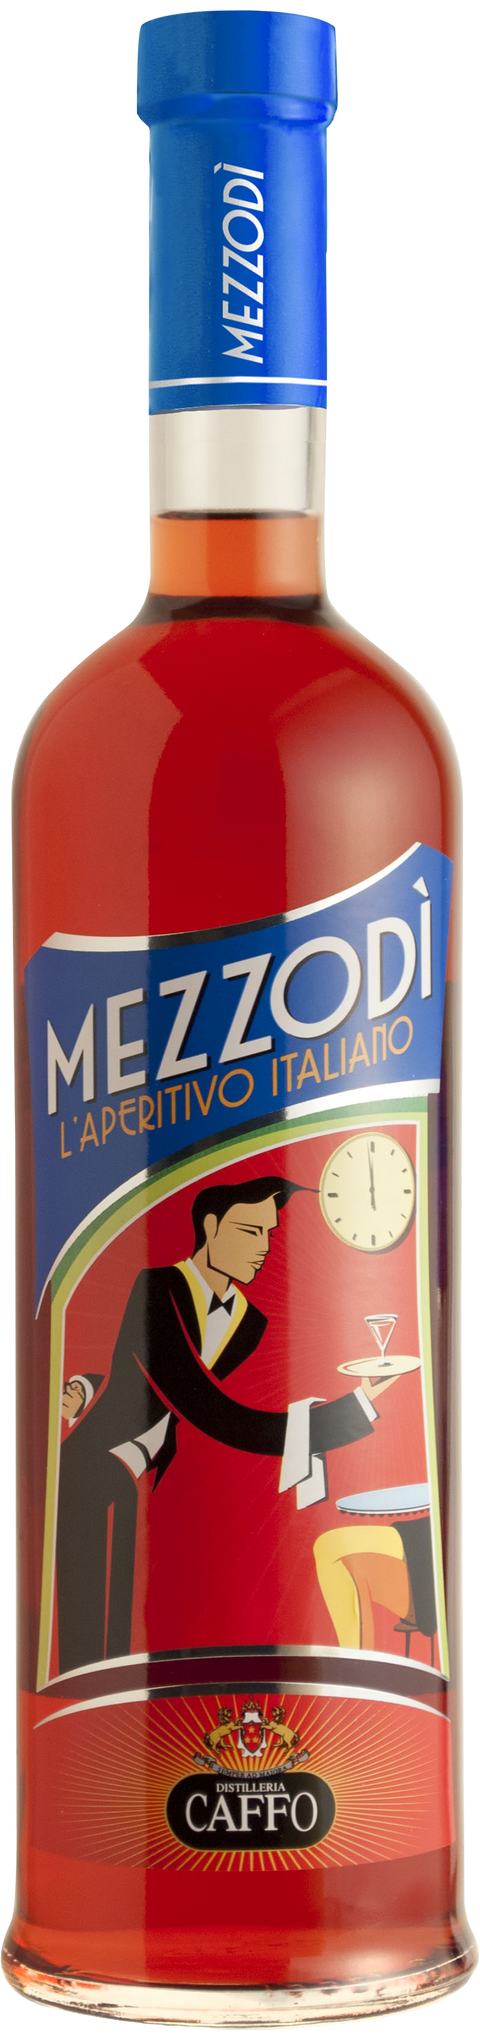 Mezzodi Aperitivo Italiano---0---Apéritif---Caffo---1